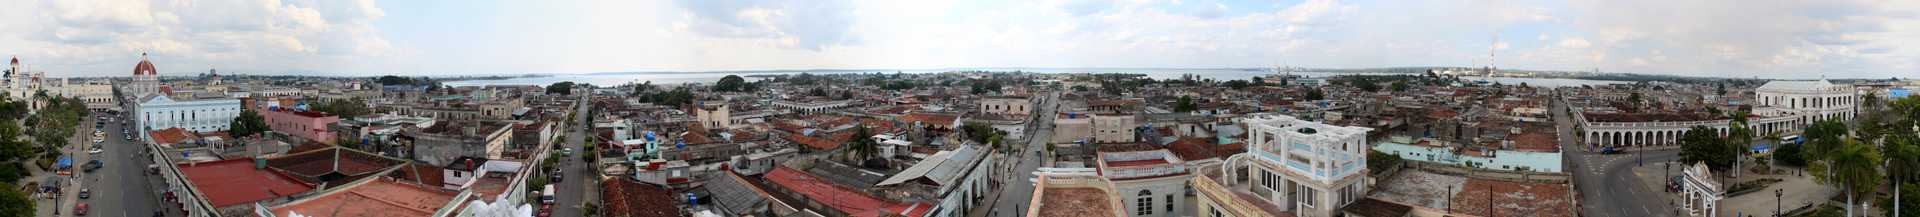 Cinfuegos, Cuba